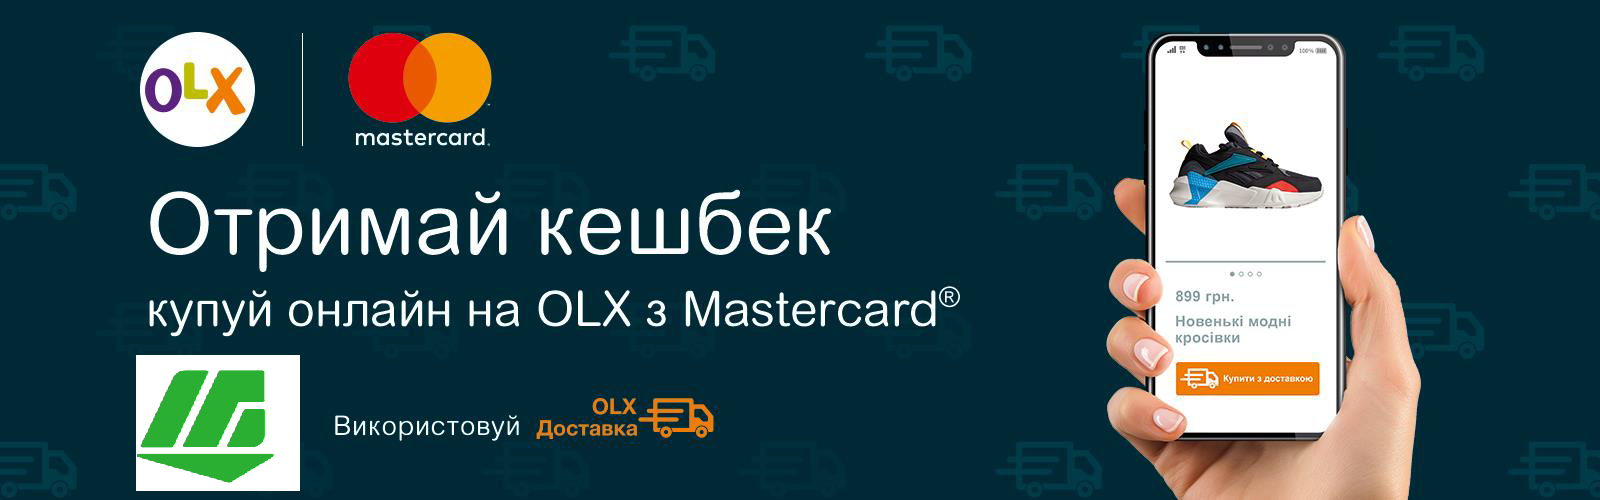 Оголошуємо нову акцію спільно з Mastercard® та сервісом OLX! - фото - mtb.ua